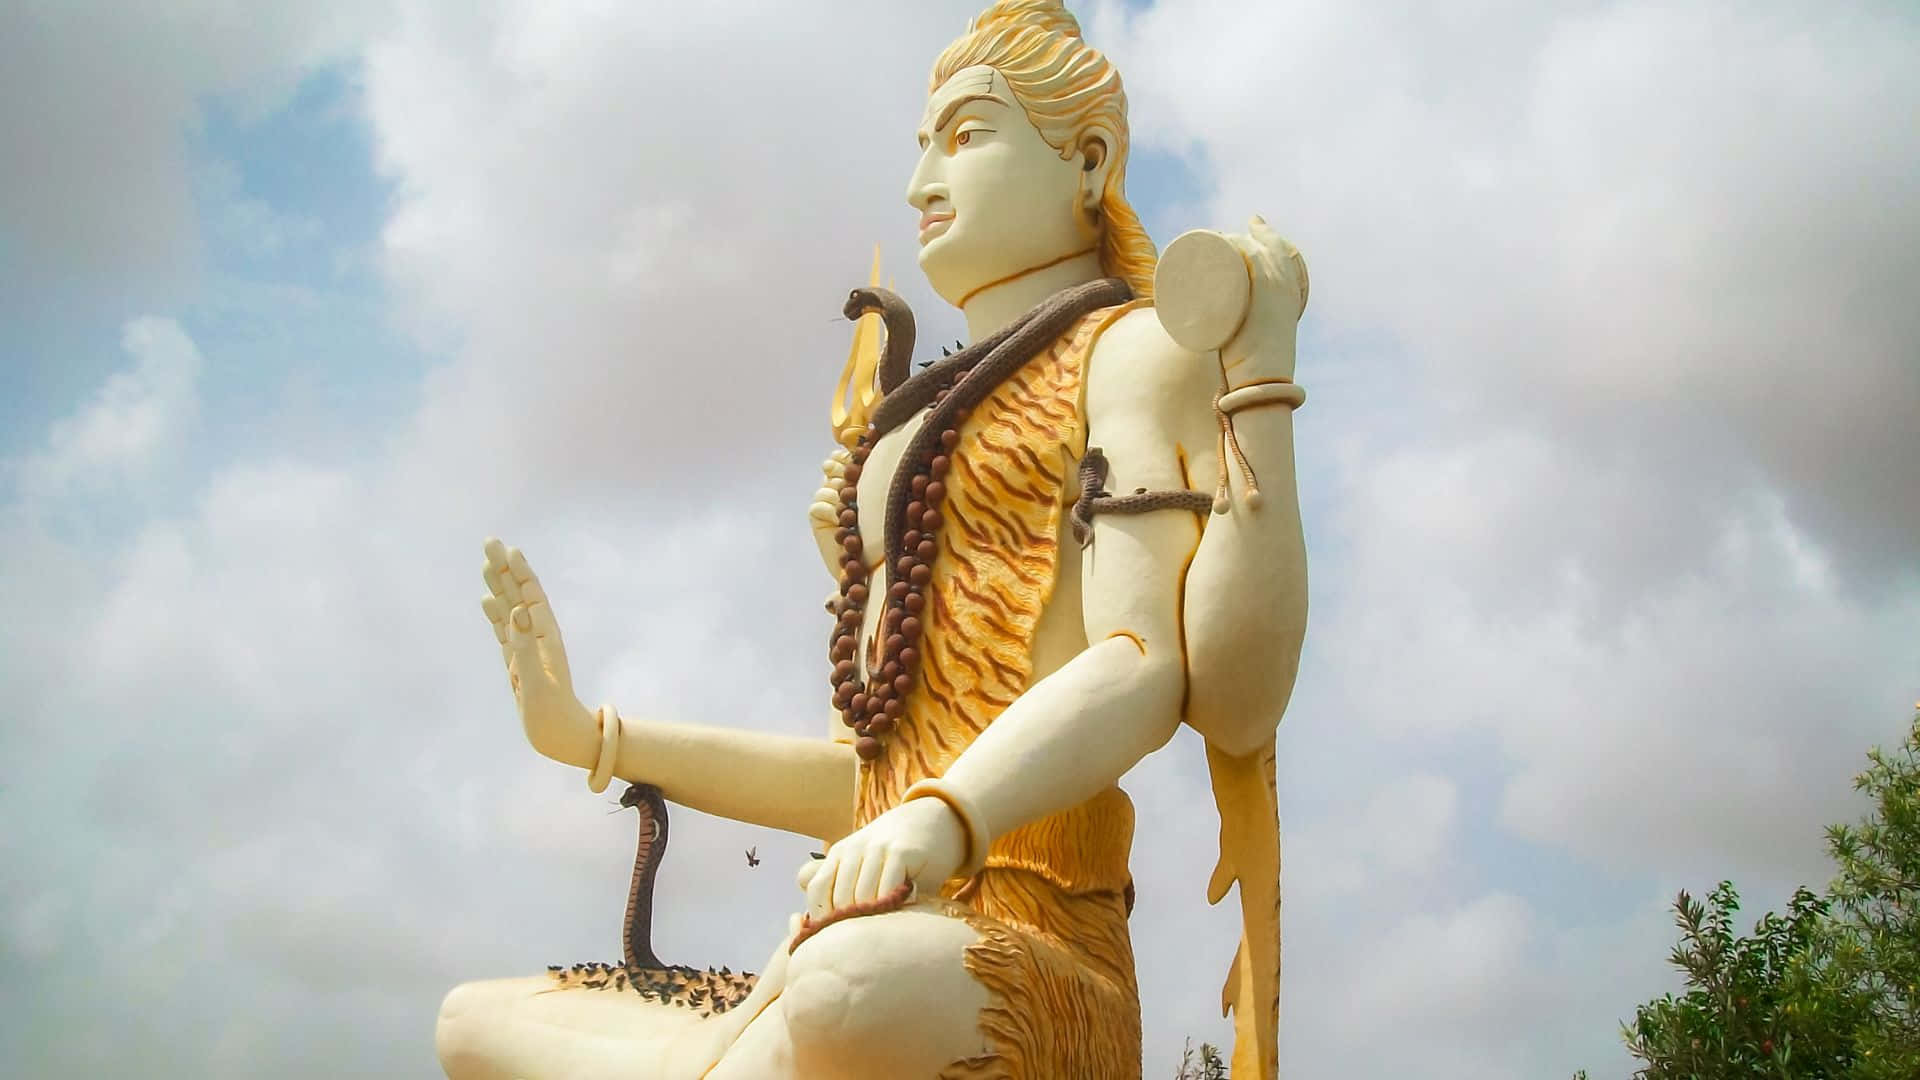 The Lord, Mahadeva Shiva